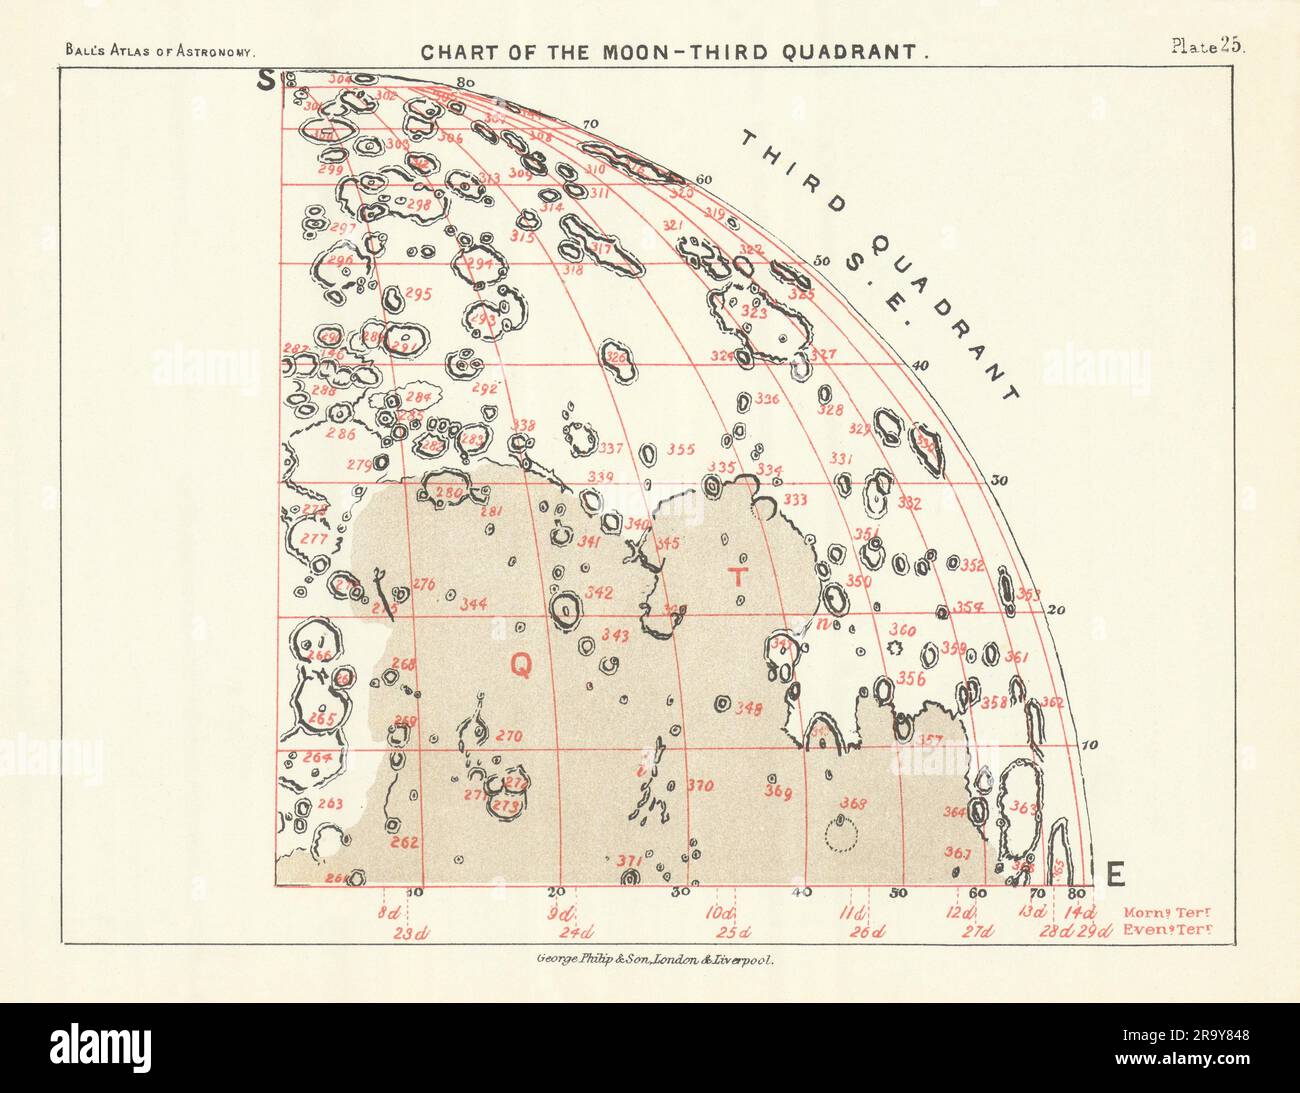 Diagramm des Mond-3.-Quadranten - Südosten - von Robert Ball. Astronomie-1892-Karte Stockfoto